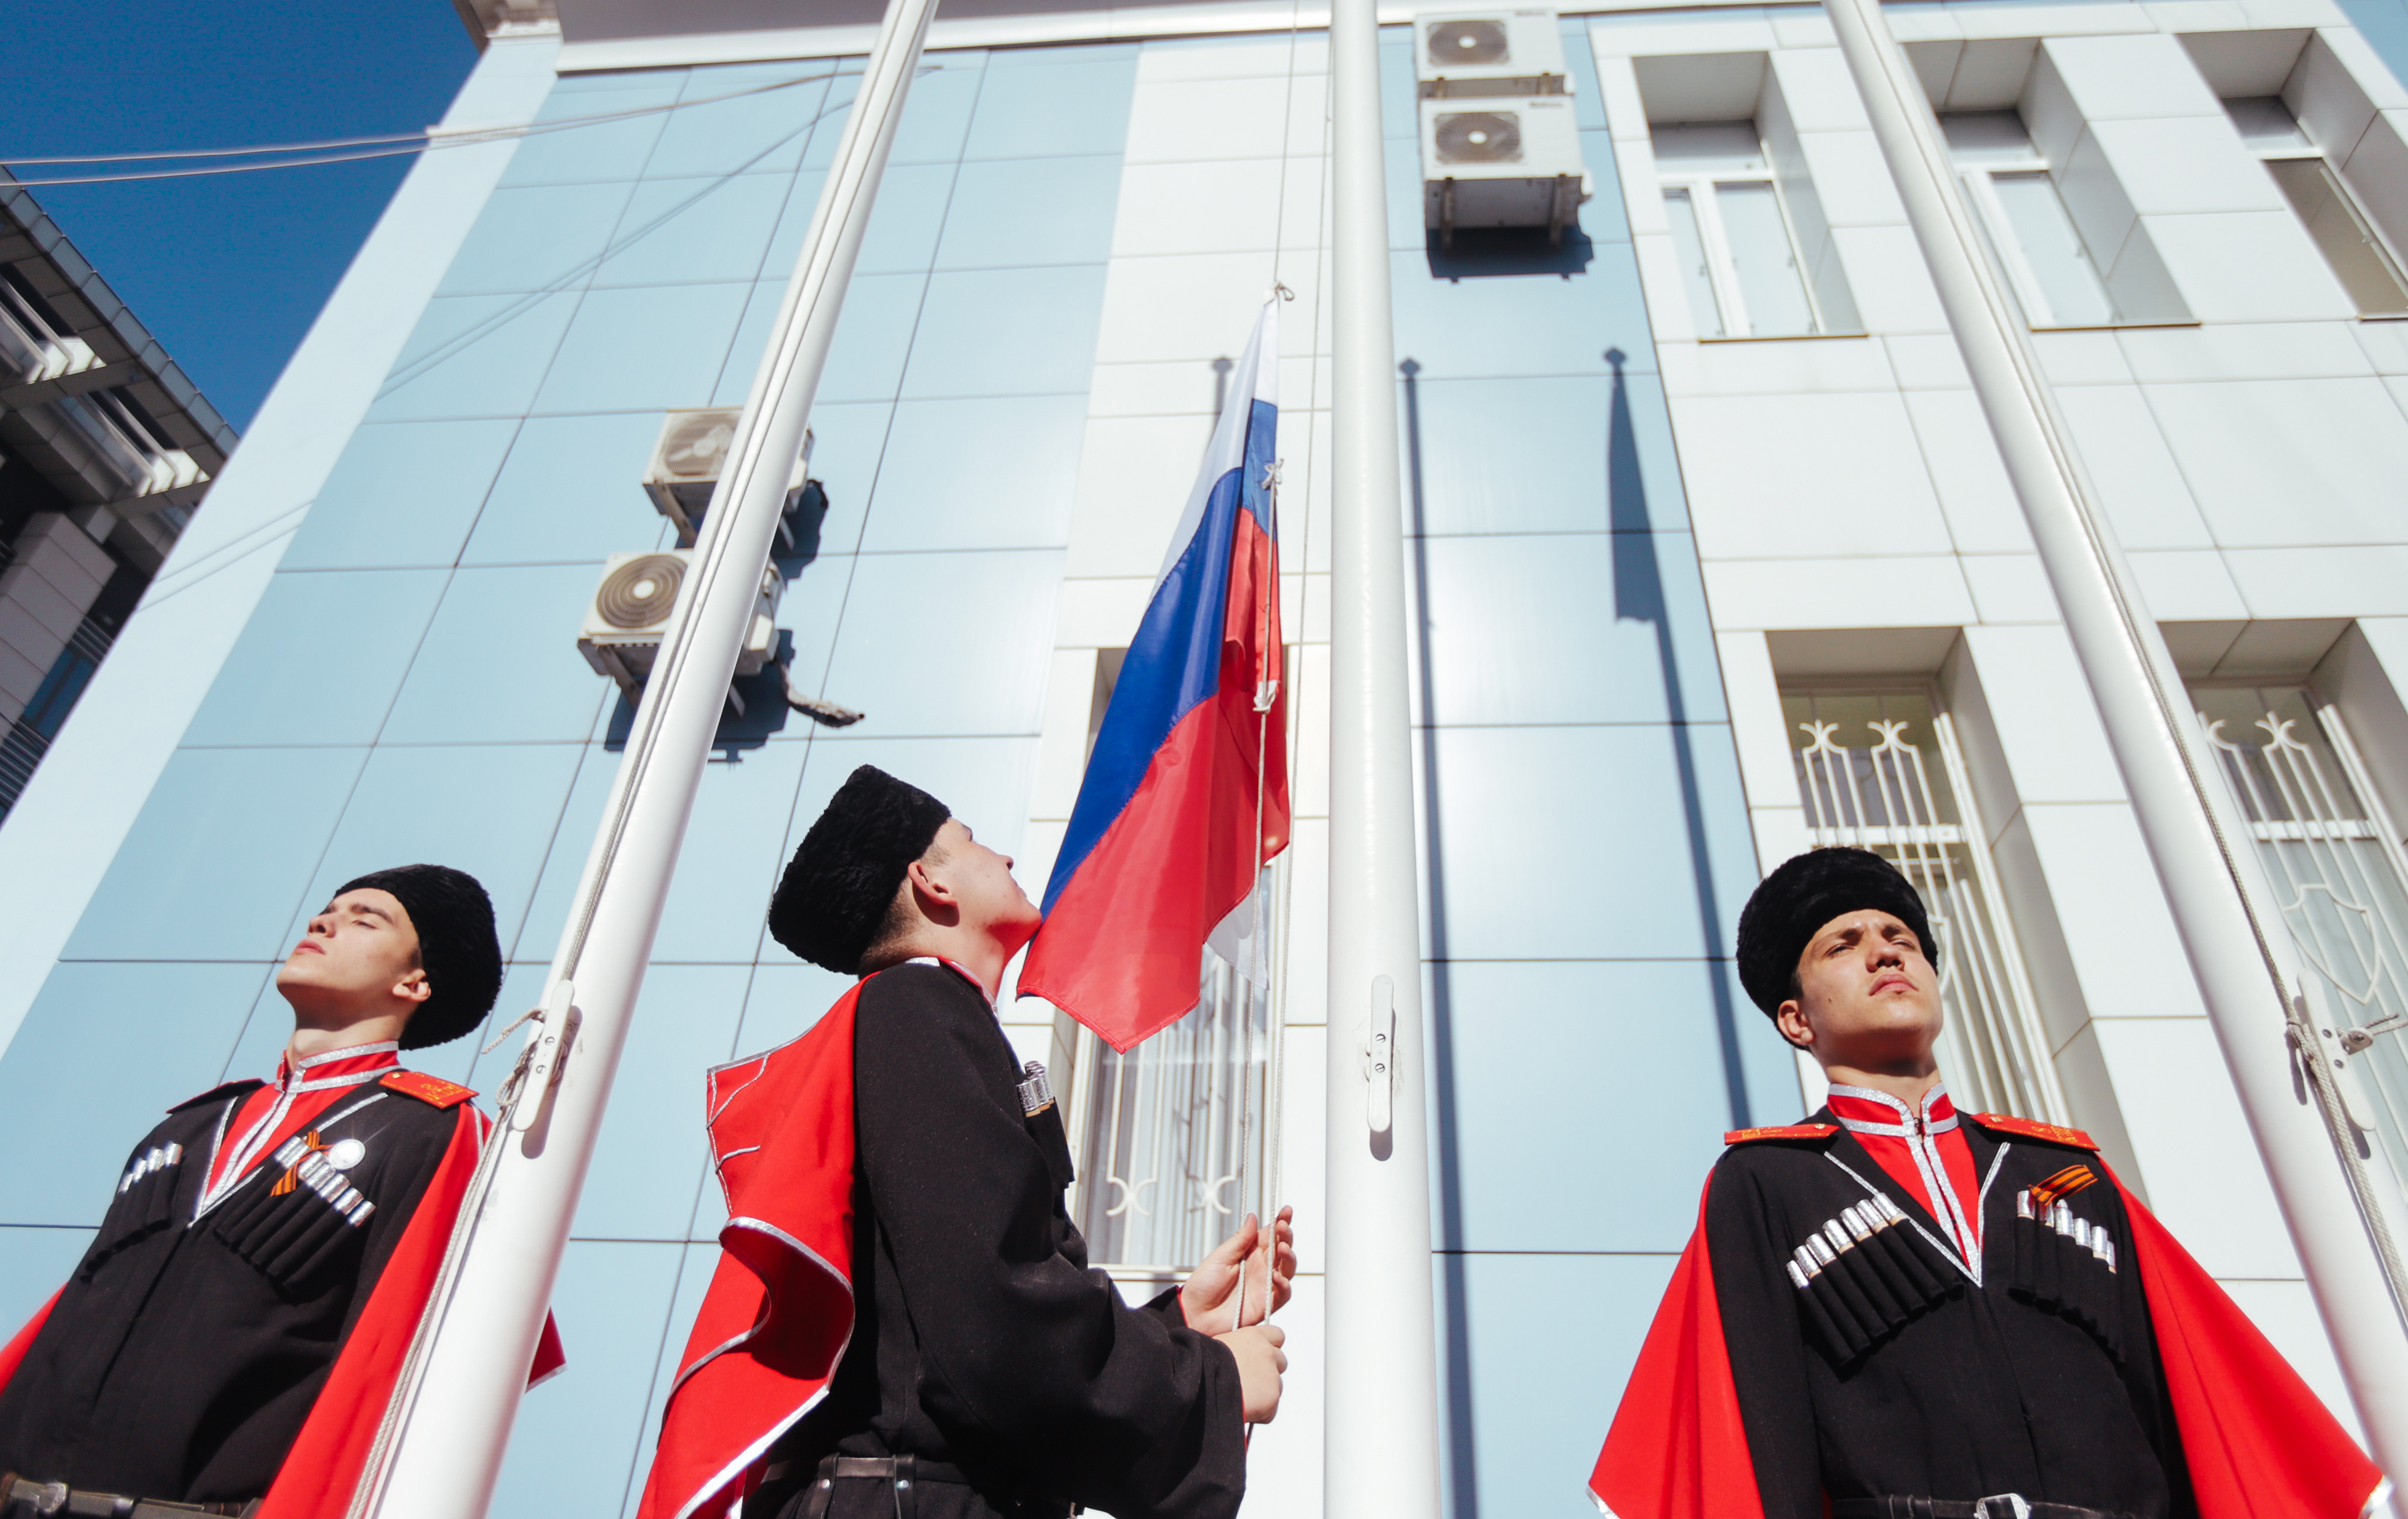 Вернулись к традициям: каждую неделю в школах Краснодара взмывает в небо  флаг России